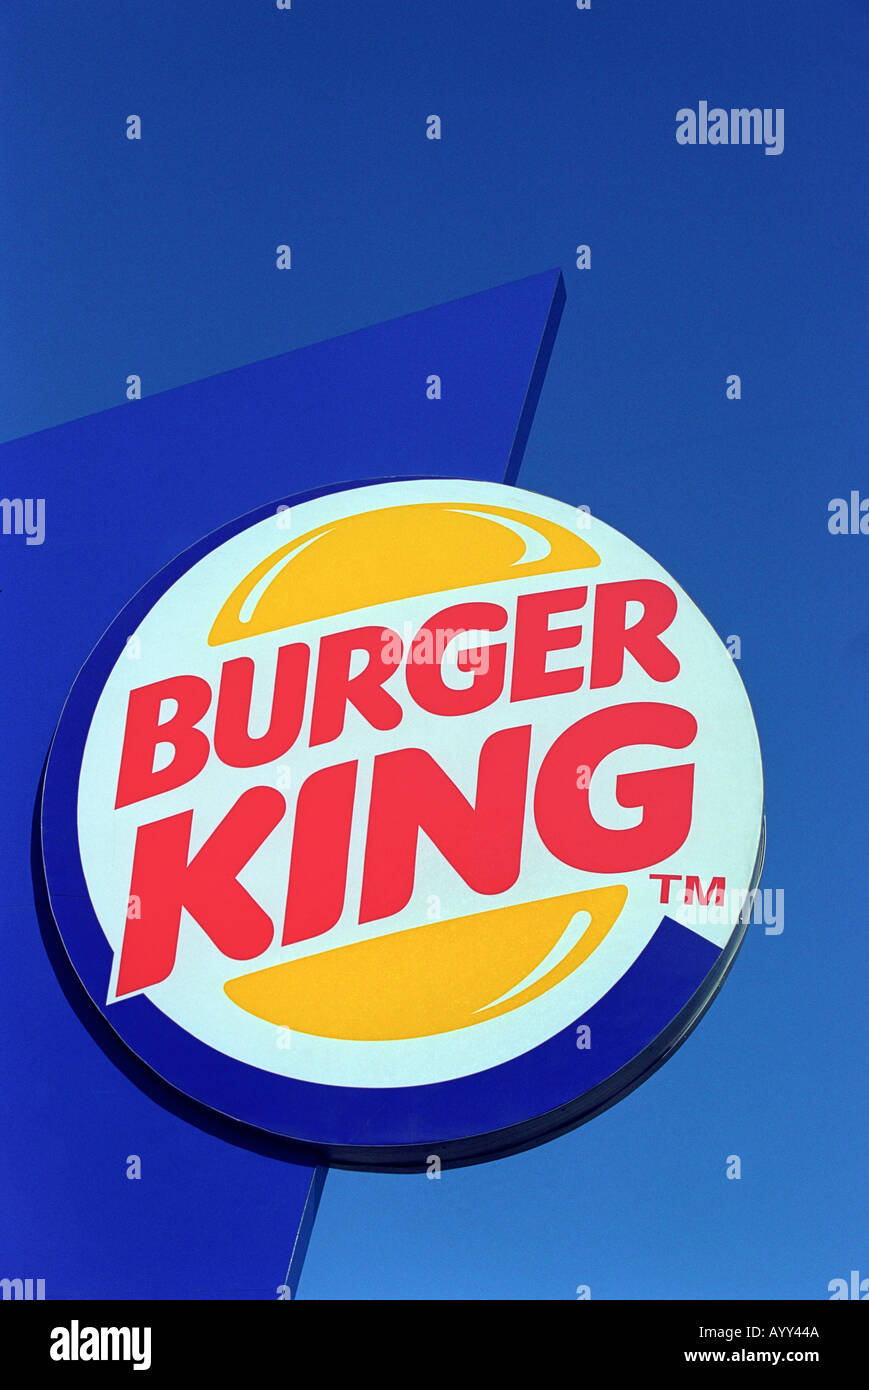 Burger King sign Stock Photo